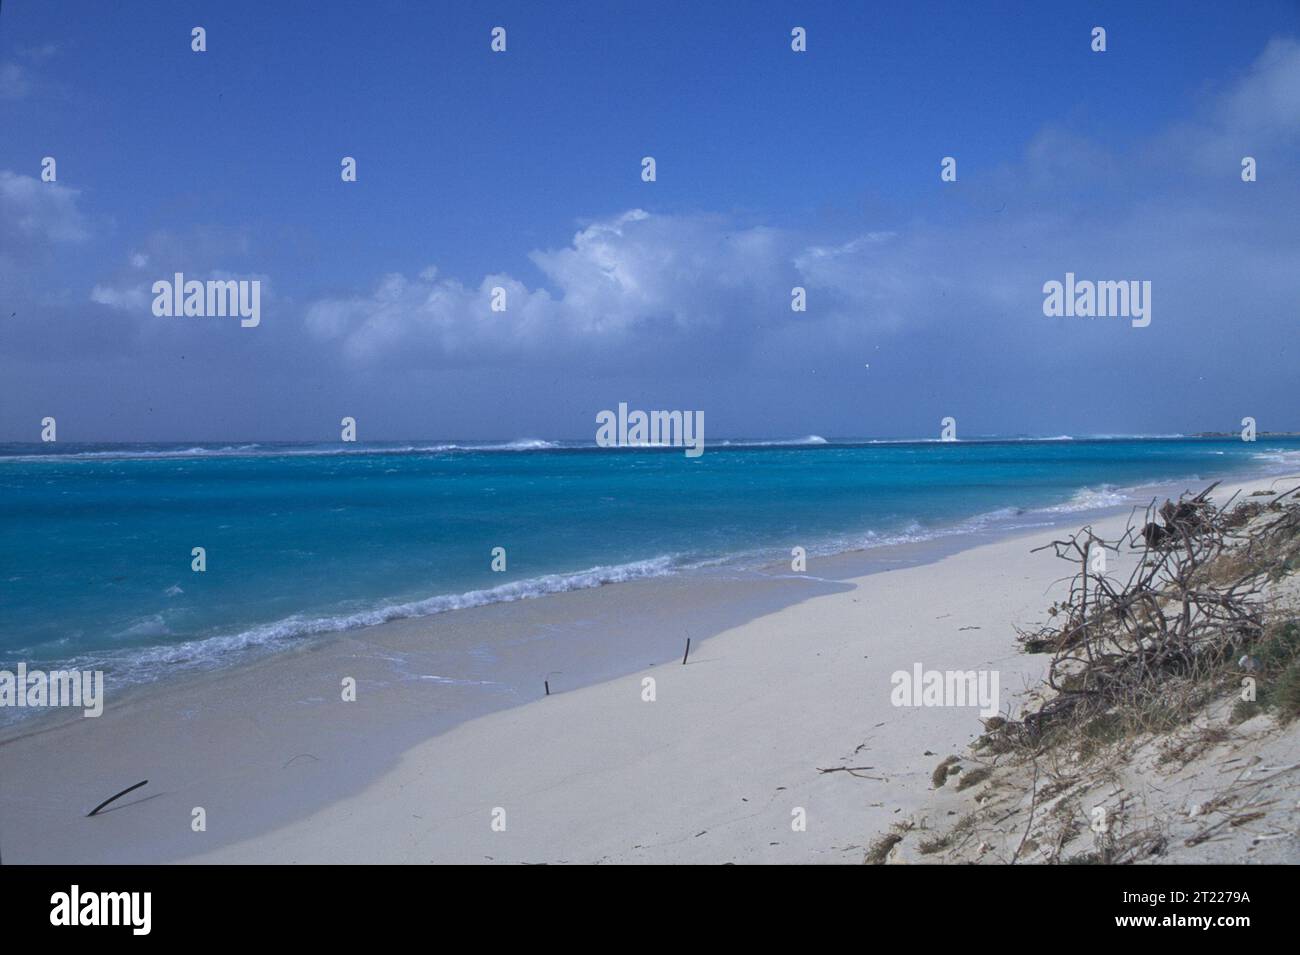 Litorale di spiaggia situato nell'atollo Midway sotto il cielo limpido. Soggetti: Scenics; Coastal Environments. Località: Hawaii. Fish and Wildlife Service Site: RISERVA NATURALE NAZIONALE DELL'ATOLLO MIDWAY. . 1998 - 2011. Foto Stock